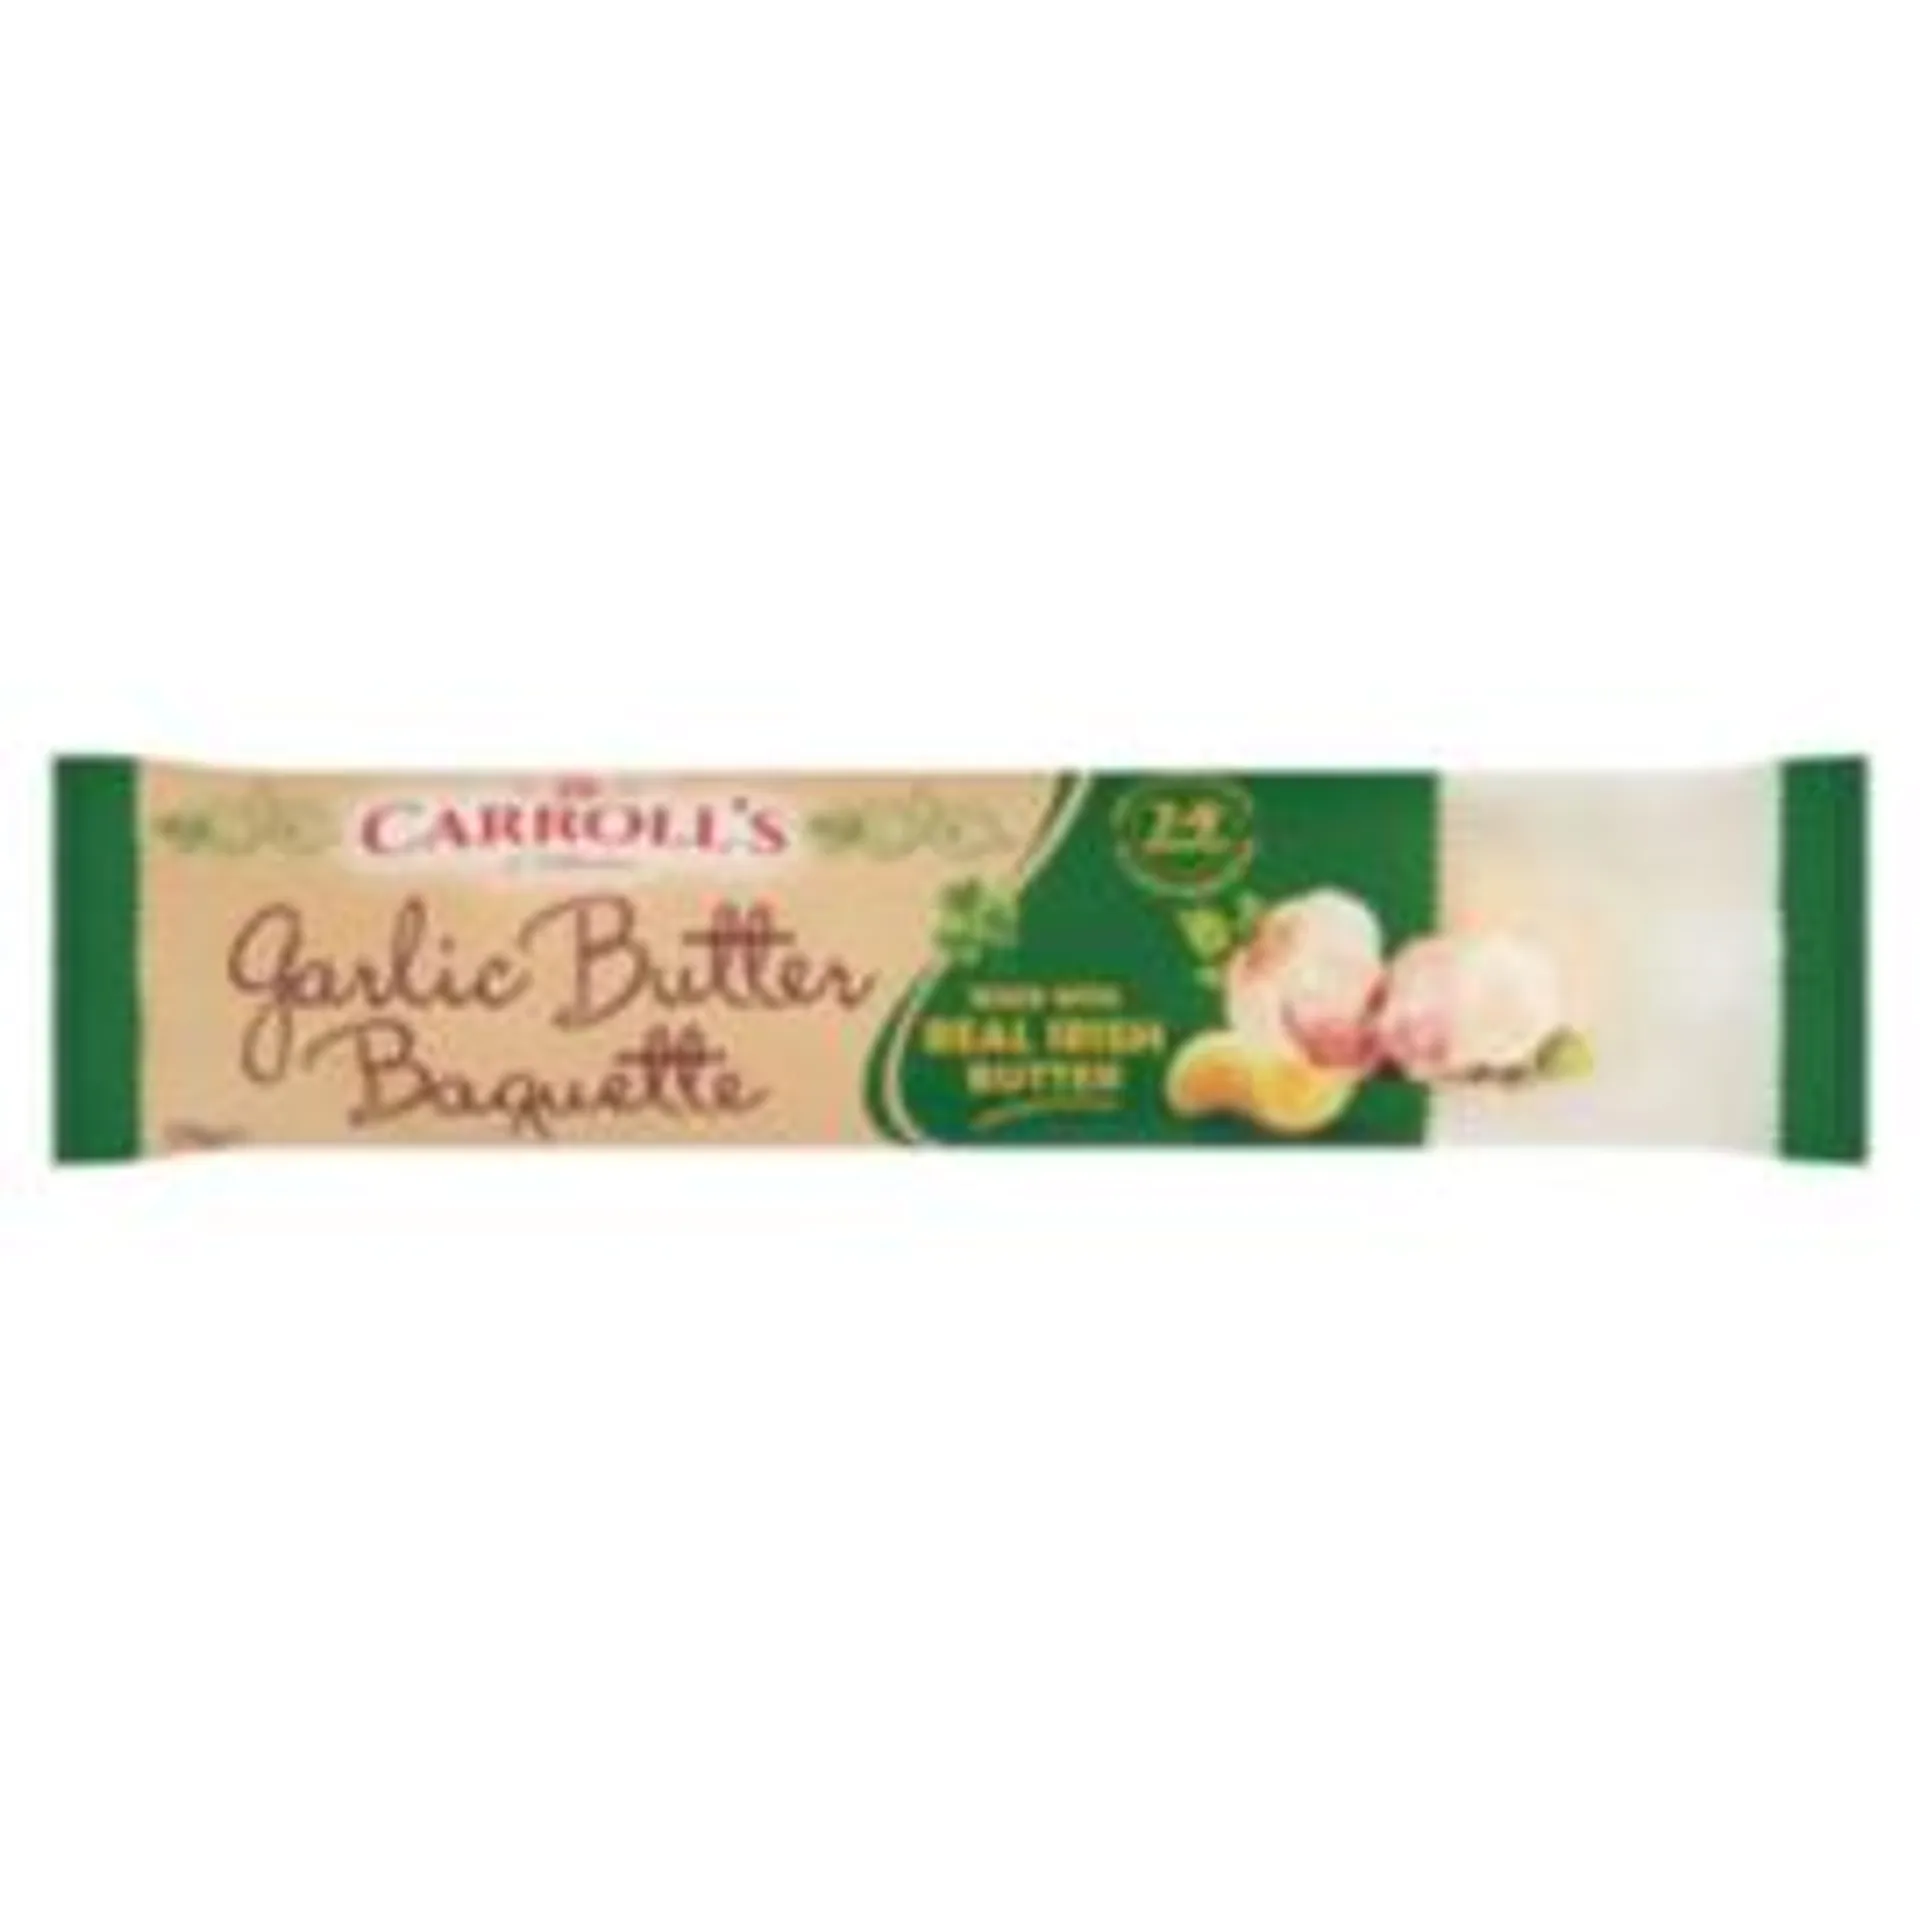 Carroll's of Tullamore Garlic Butter Baguette